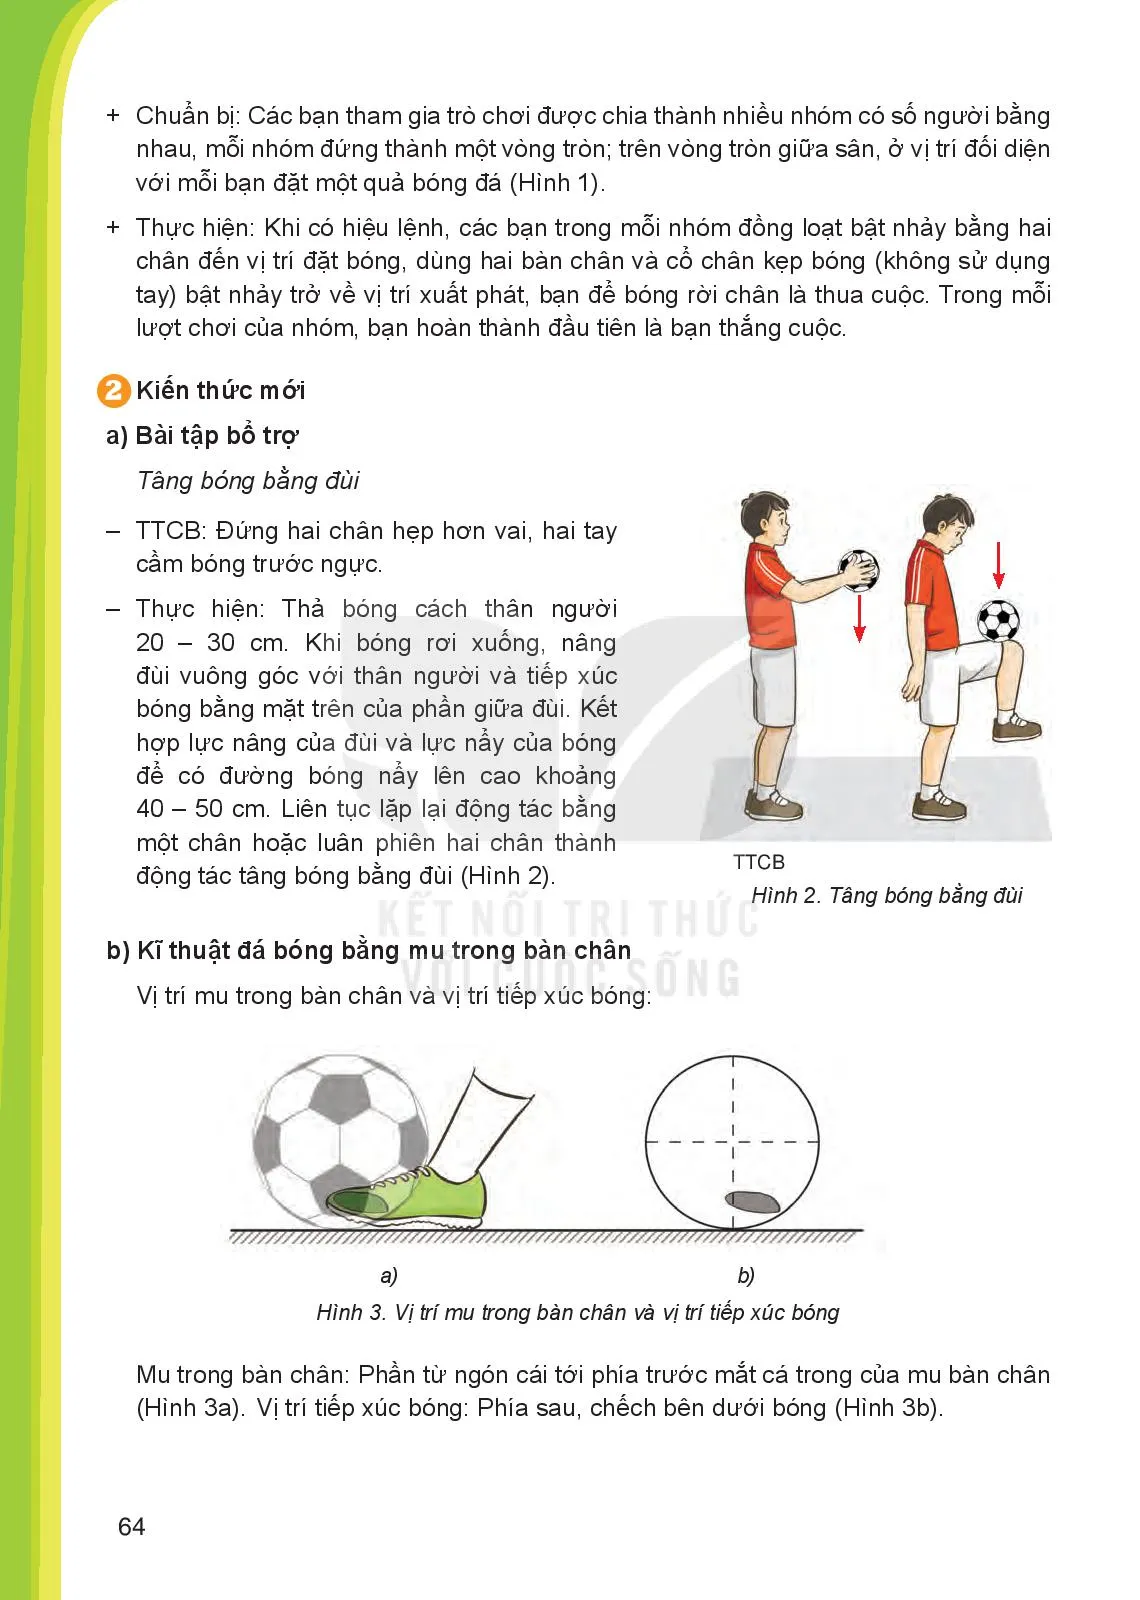 Bài 1. Kĩ thuật đá bóng bằng mu trong bán chân